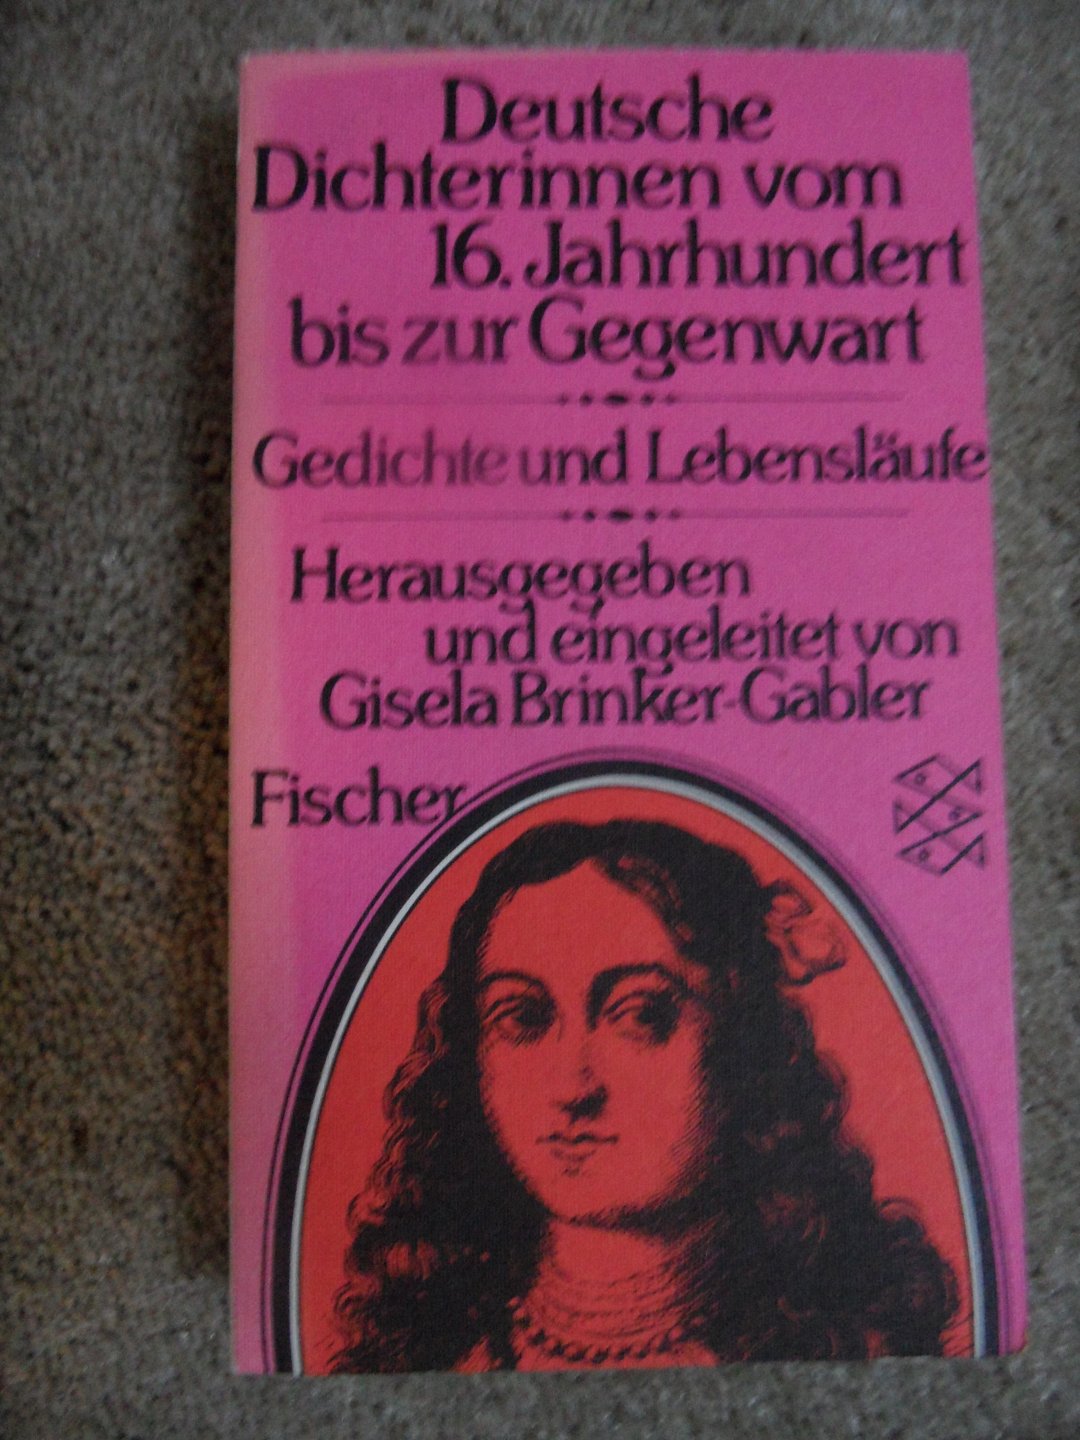 Brinker-Gabler, Gisela - Deutsche Dichterinnen vom 16. Jahrhundert bis zur Gegenwart. Gedichte und Lebensläufe